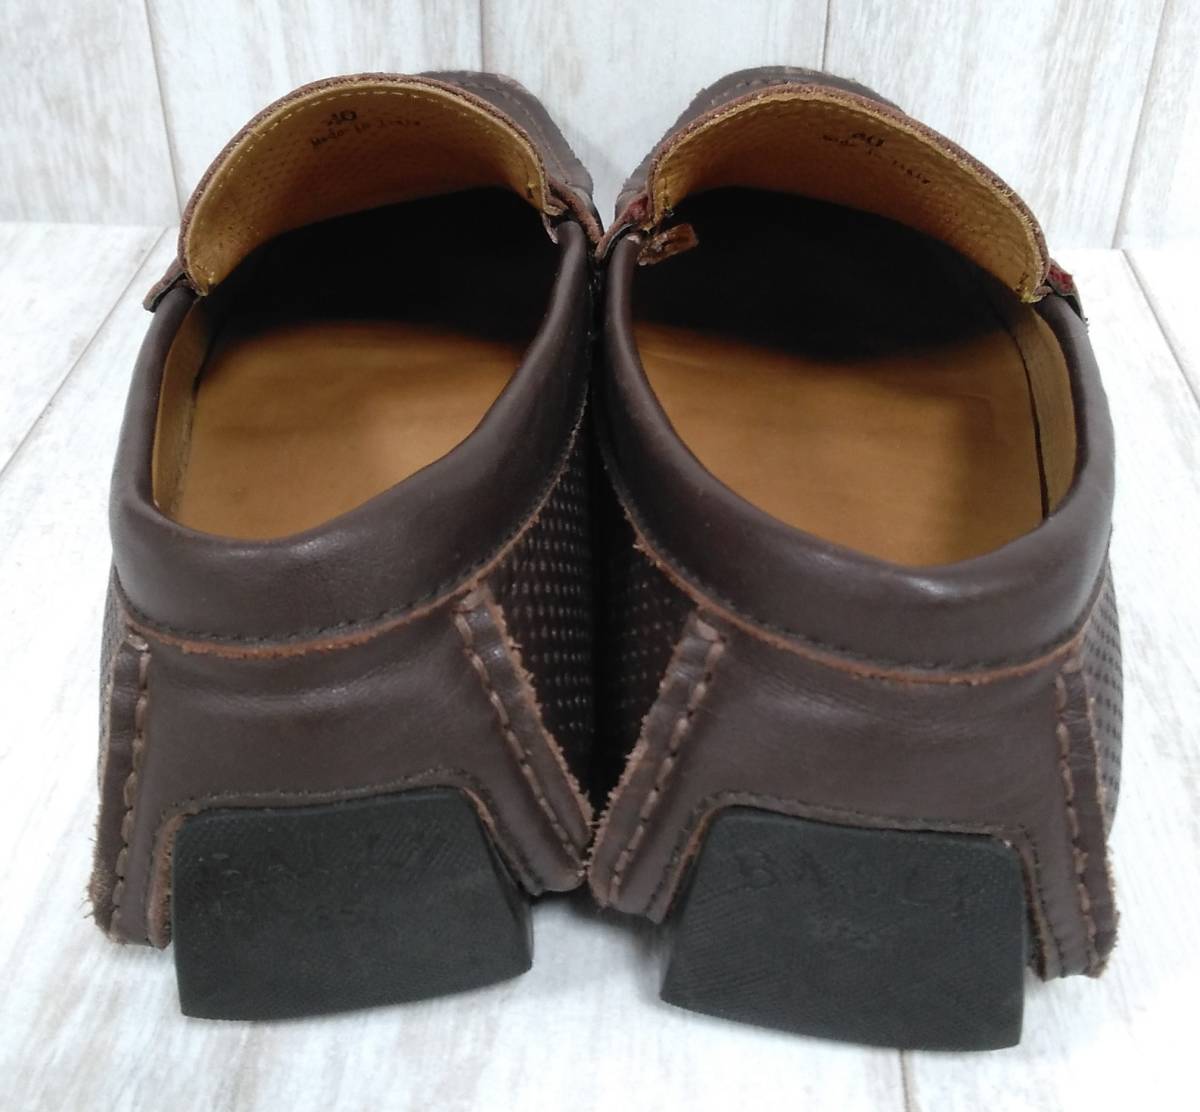 BALLY Bally deck shoes примерно 25.0cm(40) Brown мужской * пальцы ног часть цвет .. есть 